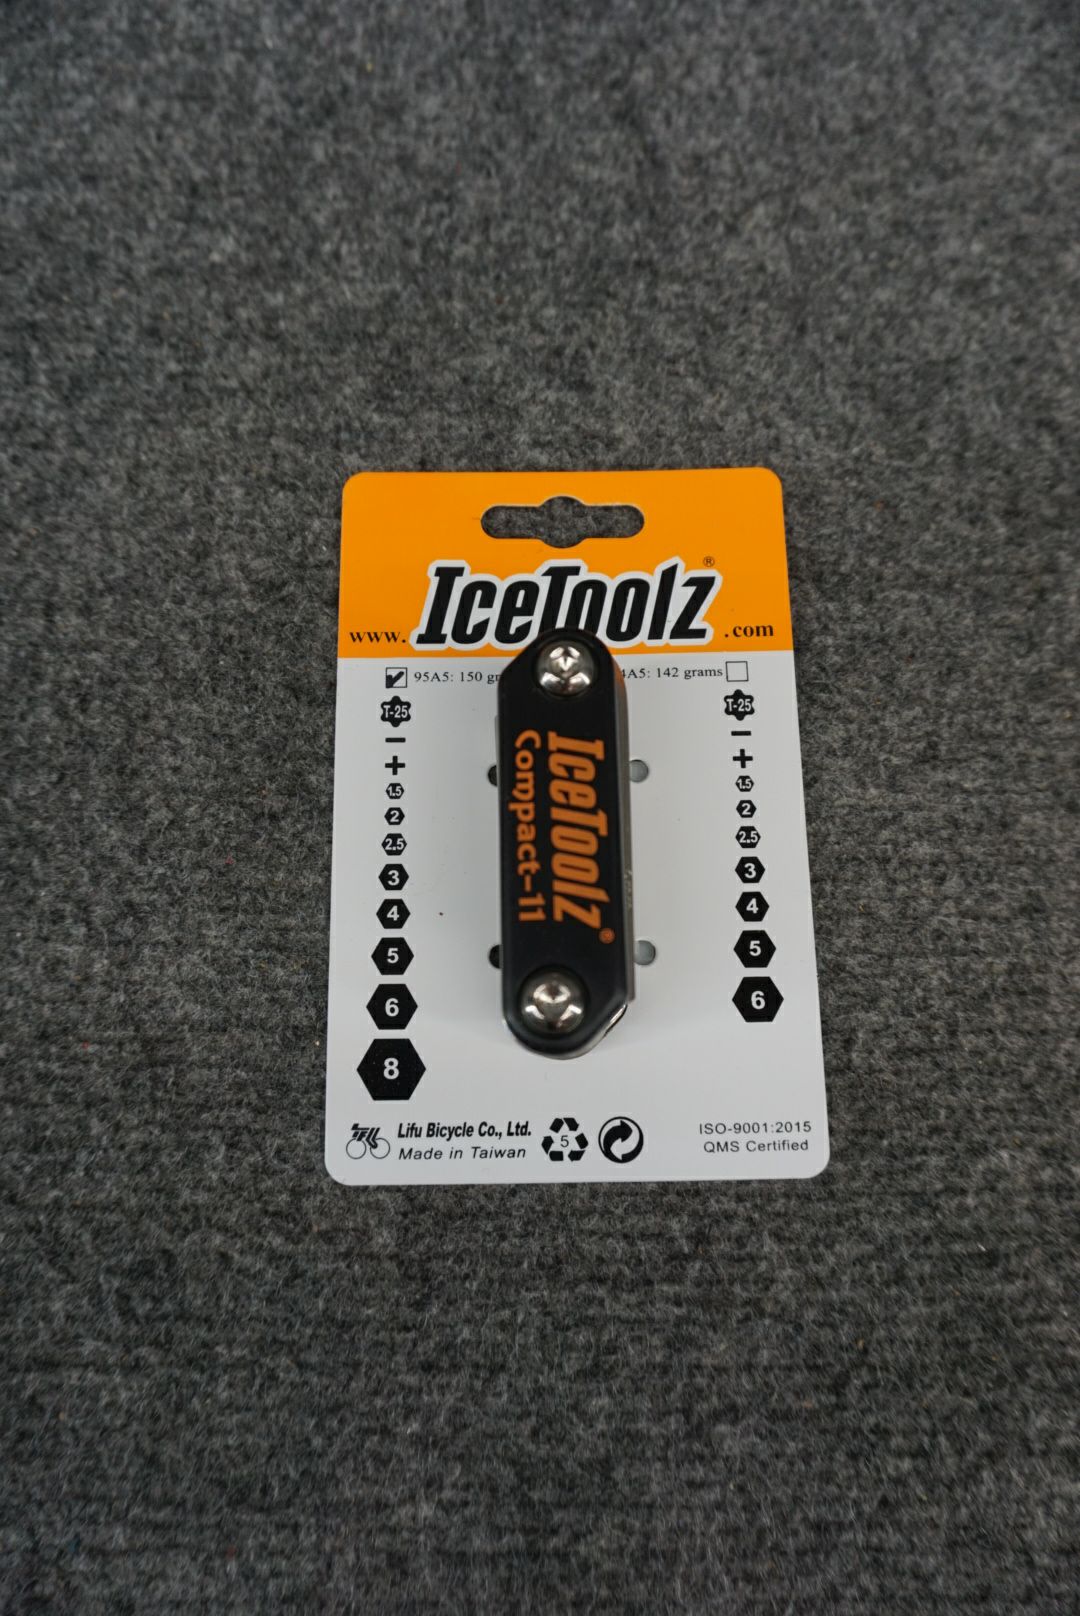 IceToolz Multi-Tool